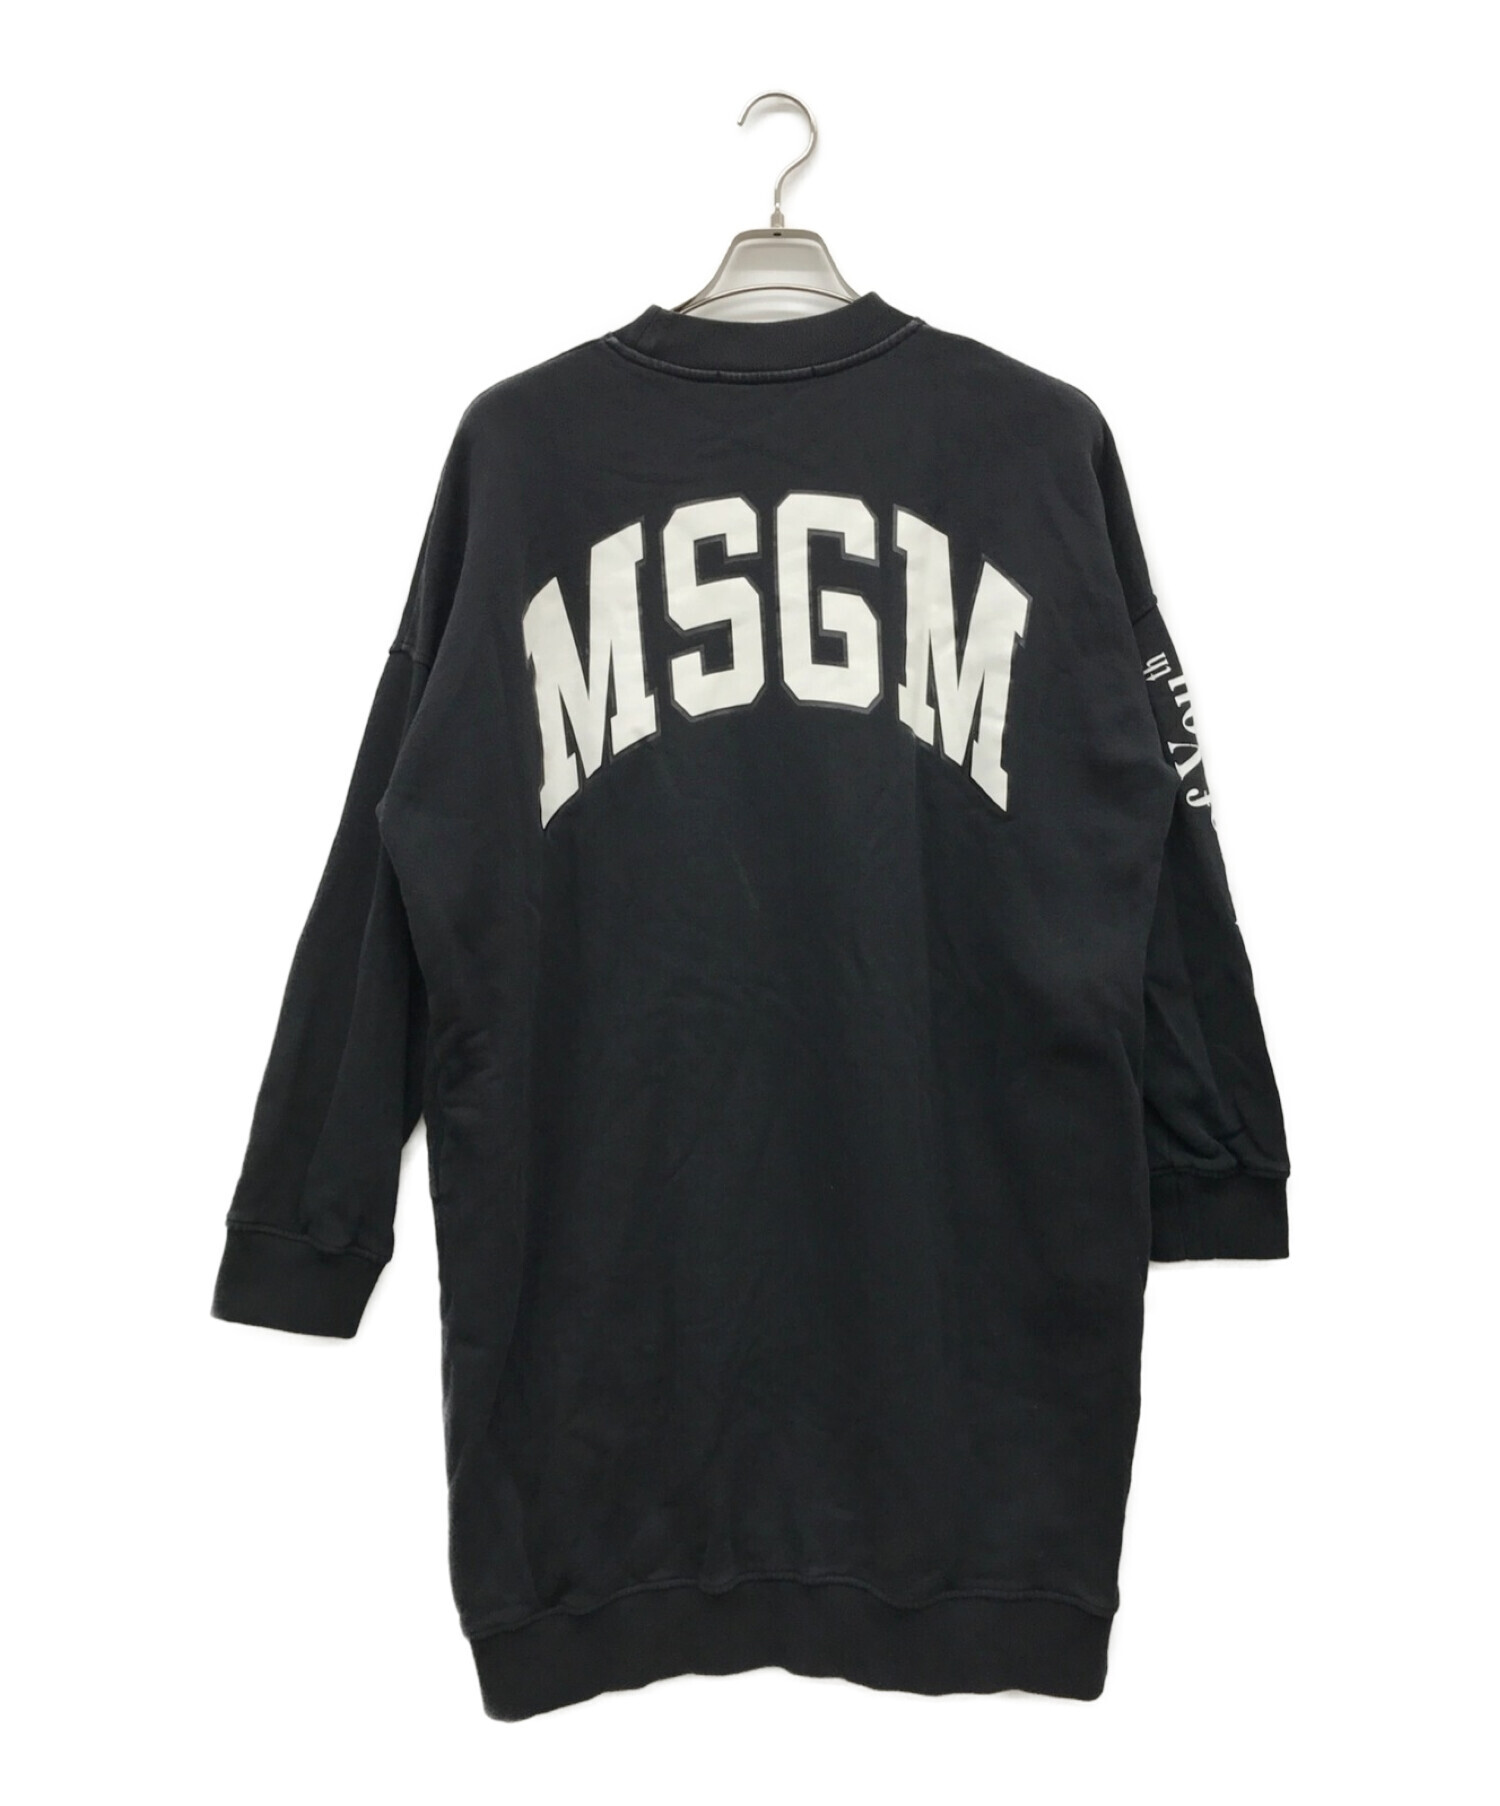 MSGM (エムエスジーエム) スウェットワンピース ブラック サイズ:XS